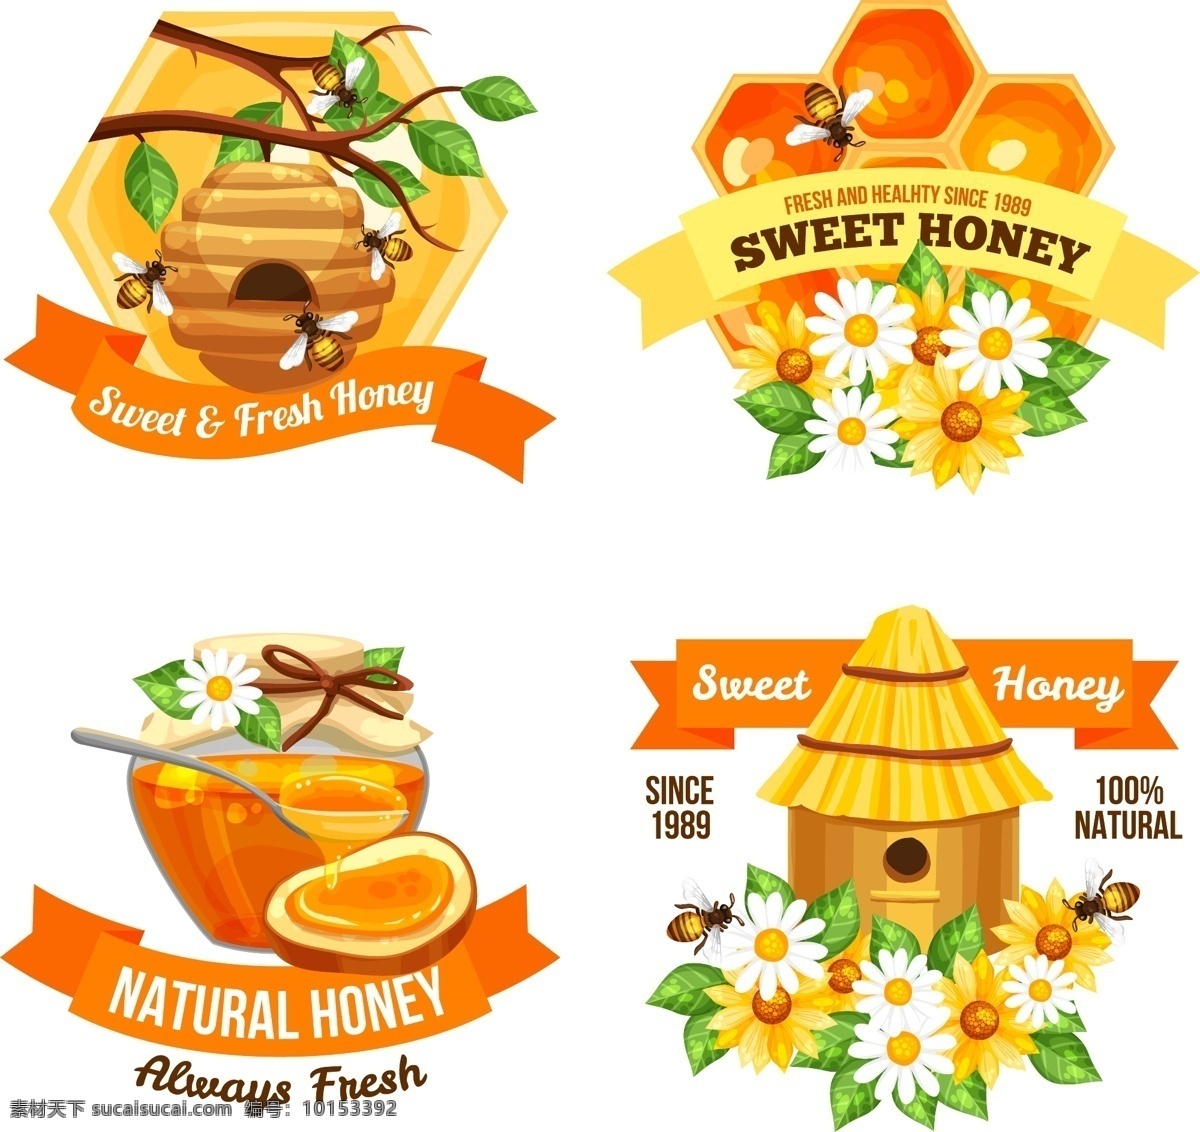 手绘蜜蜂蜂蜜 标志logo 手绘蜂蜜 手绘蜜蜂 采蜜 蜜蜂 蜂蜜包装 蜂蜜logo 蜂蜜标志 蜂蜜标识 蜂蜜贴纸 标志 蜂蜜蜜蜂 蜜蜂蜂蜜 蜜蜂标志 卡通设计